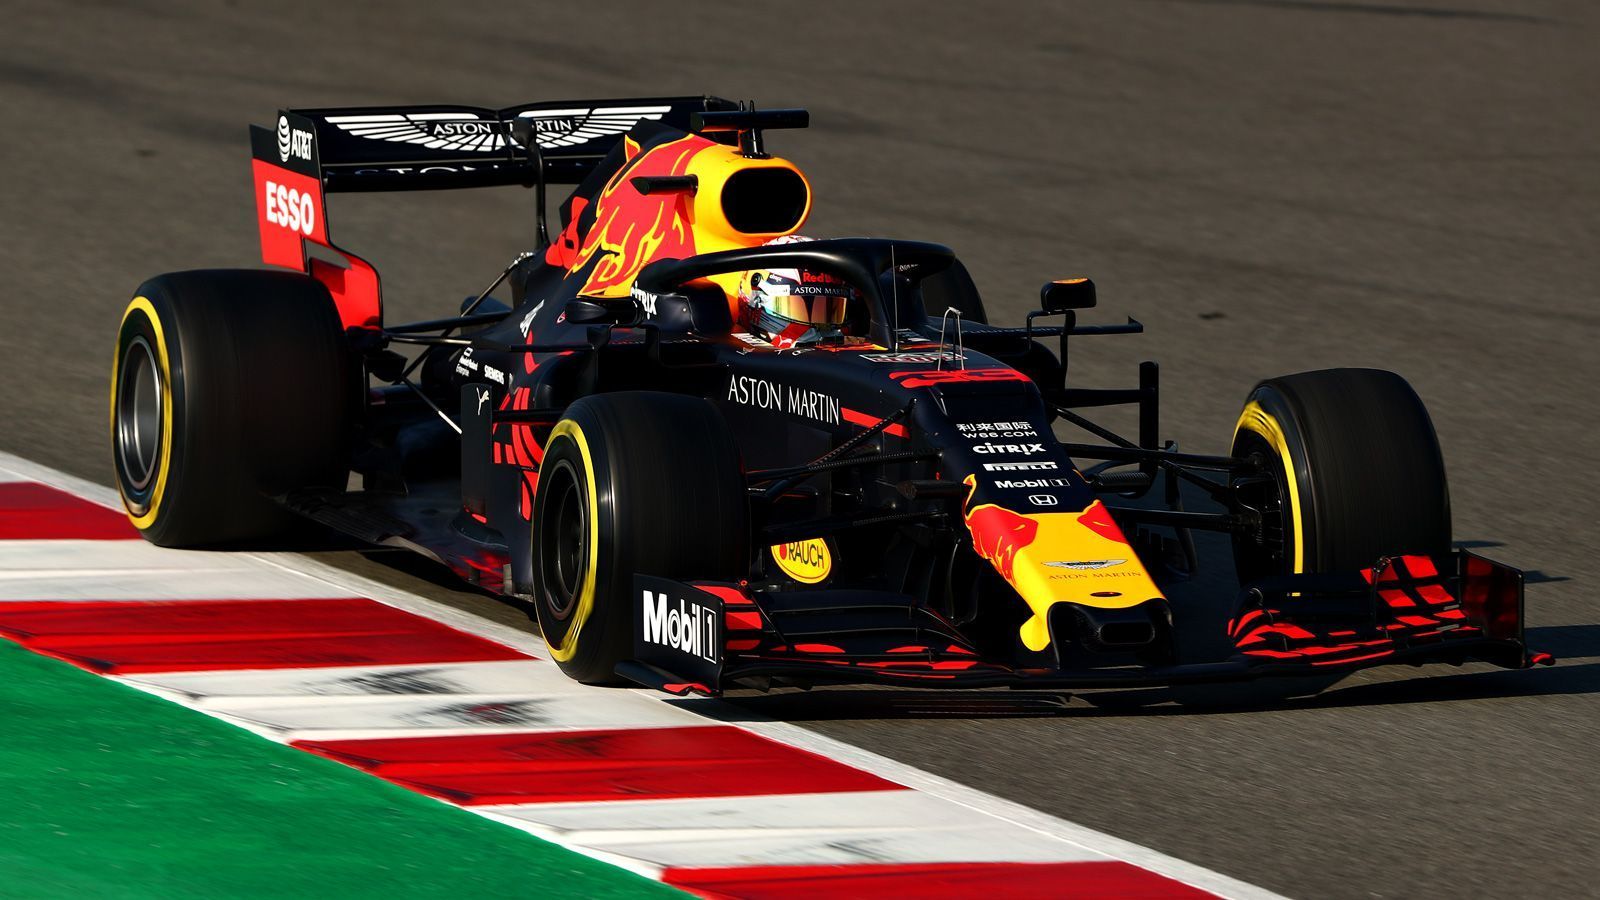 
                <strong>Platz 3: Red Bull Racing</strong><br>
                Red Bull verzichtete in Barcelona auf schnelle Rundenzeiten auf den weichen Reifen. Im abschließenden Zeitenvergleich landeten Pierre Gasly (11.) und Max Verstappen (16.) deshalb ungewöhnlich weit hinten. Dennoch glauben die Bullen, dass sie 2019 aus eigener Kraft gewinnen können. Dabei könnte das Team eben auch von der noch engeren Zusammenarbeit mit Toro Rosso profitieren - sowie vom neuen Honda-Antrieb. Bisher laufe laut RB-Berater Dr. Helmut Marko alles nach Plan, den Zeitabstand zu Ferrari schätzte das Team schon nach Testwoche eins auf etwa 0,2 bis 0,4 Sekunden. Bis Melbourne wolle man die Lücke aber weiter schließen - und auch Mercedes hinter sich lassen.
              